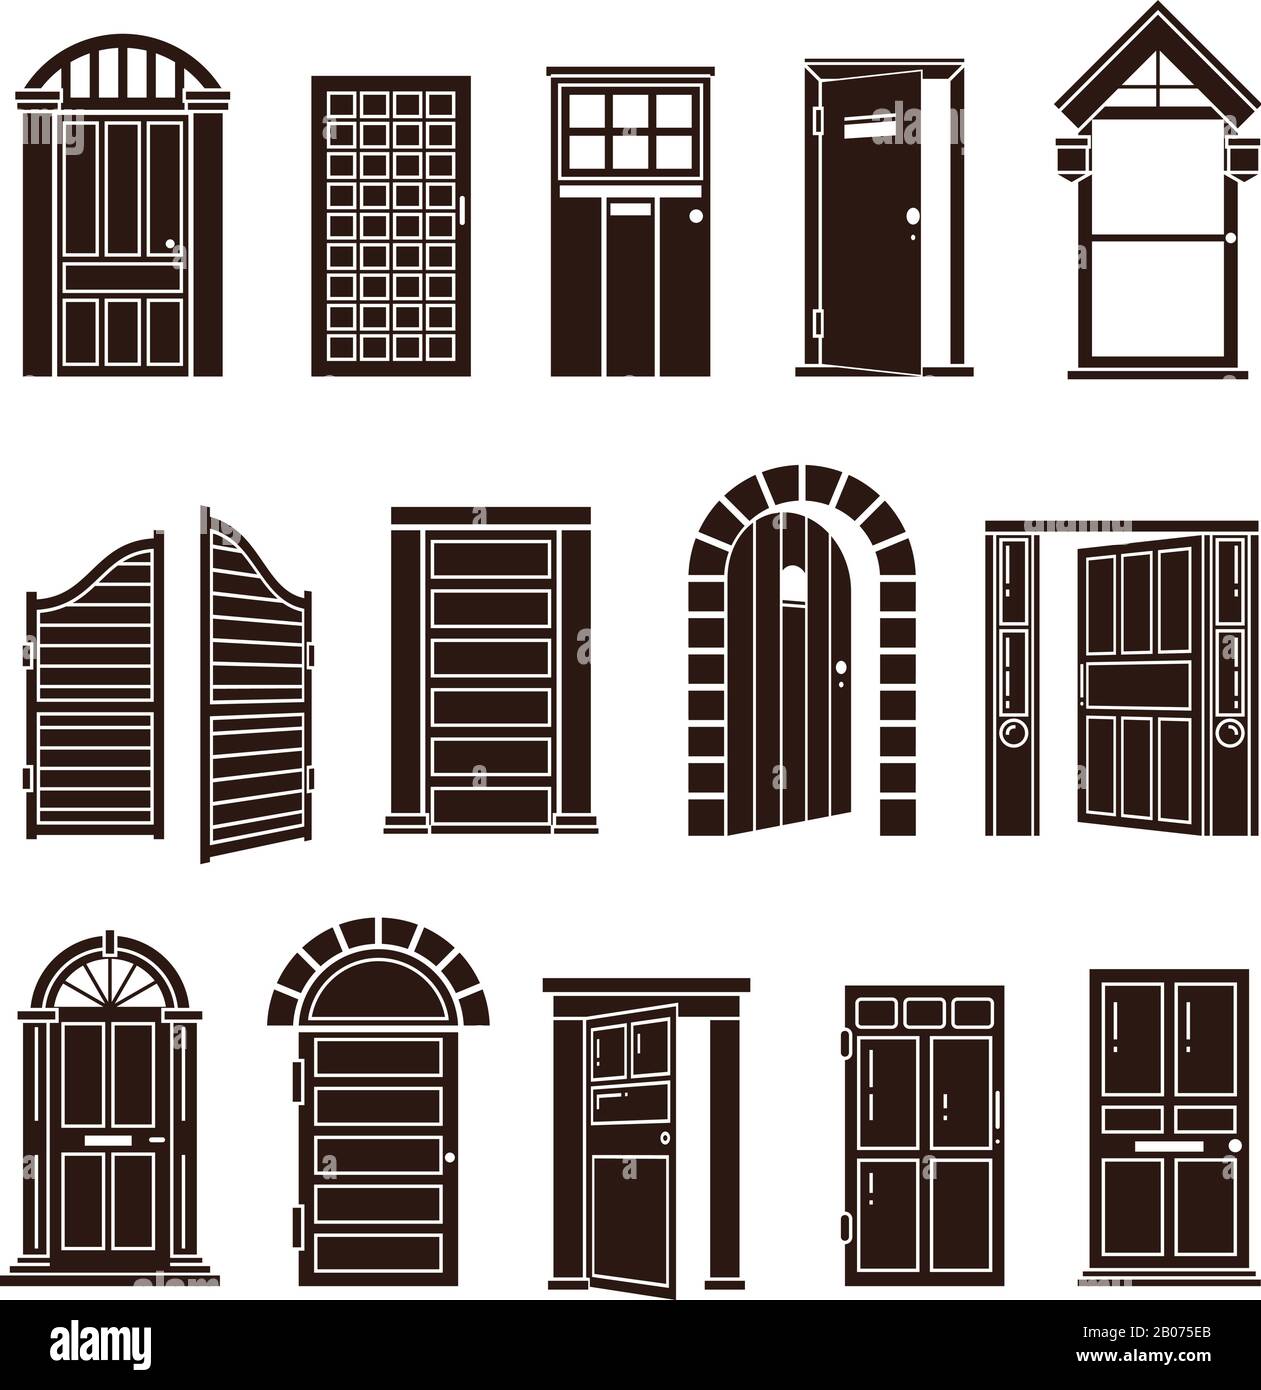 Schwarze Vektorsymbole für offene und geschlossene Türen. Eingang zu Haus oder Tür zur Büro-Illustration Stock Vektor